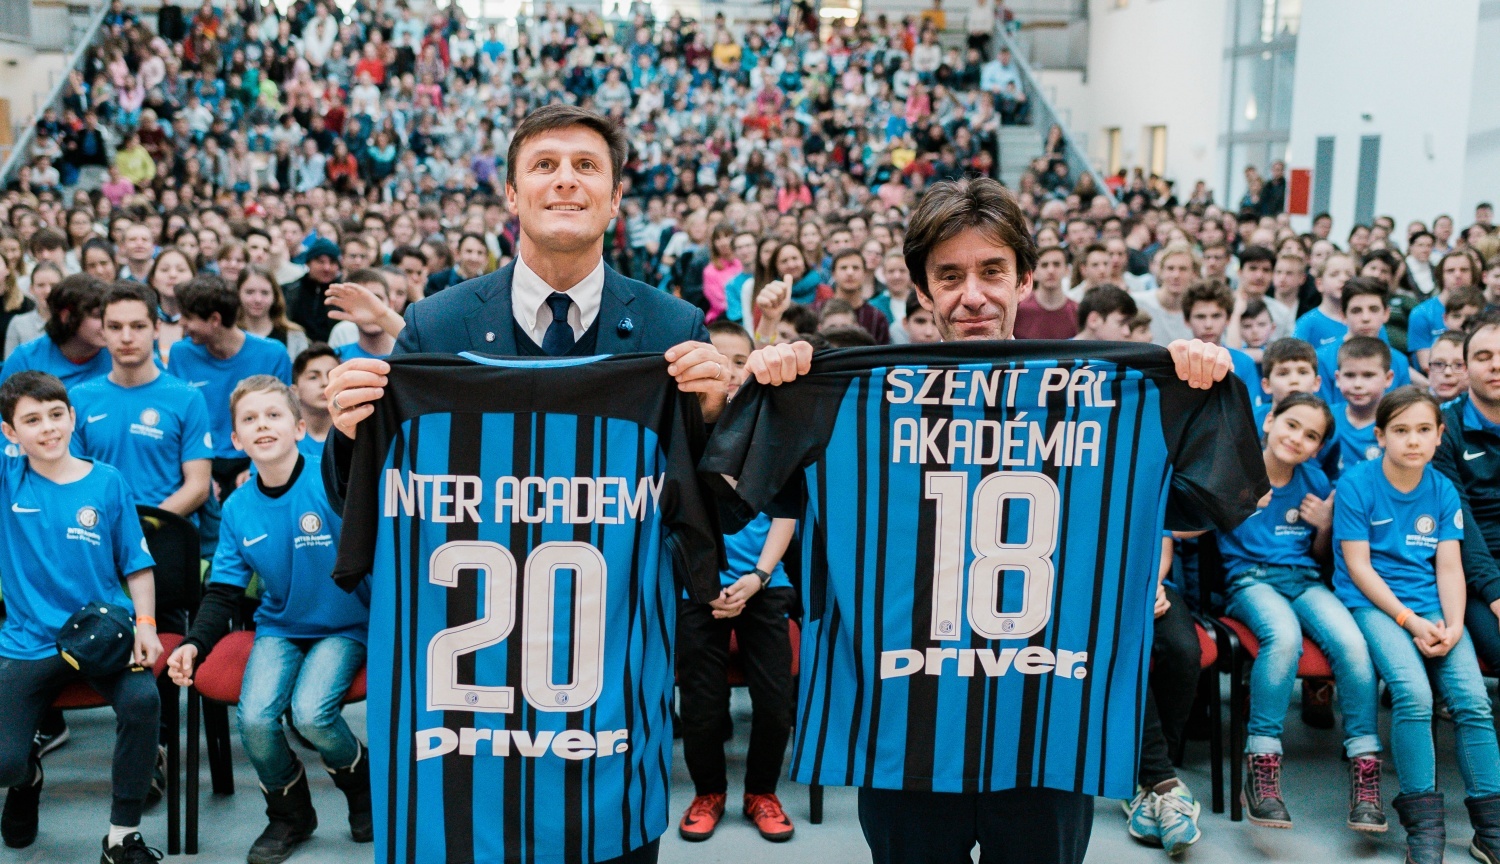 Az Inter együtműködési szerződést kötött a Szent Pál Akadémiával